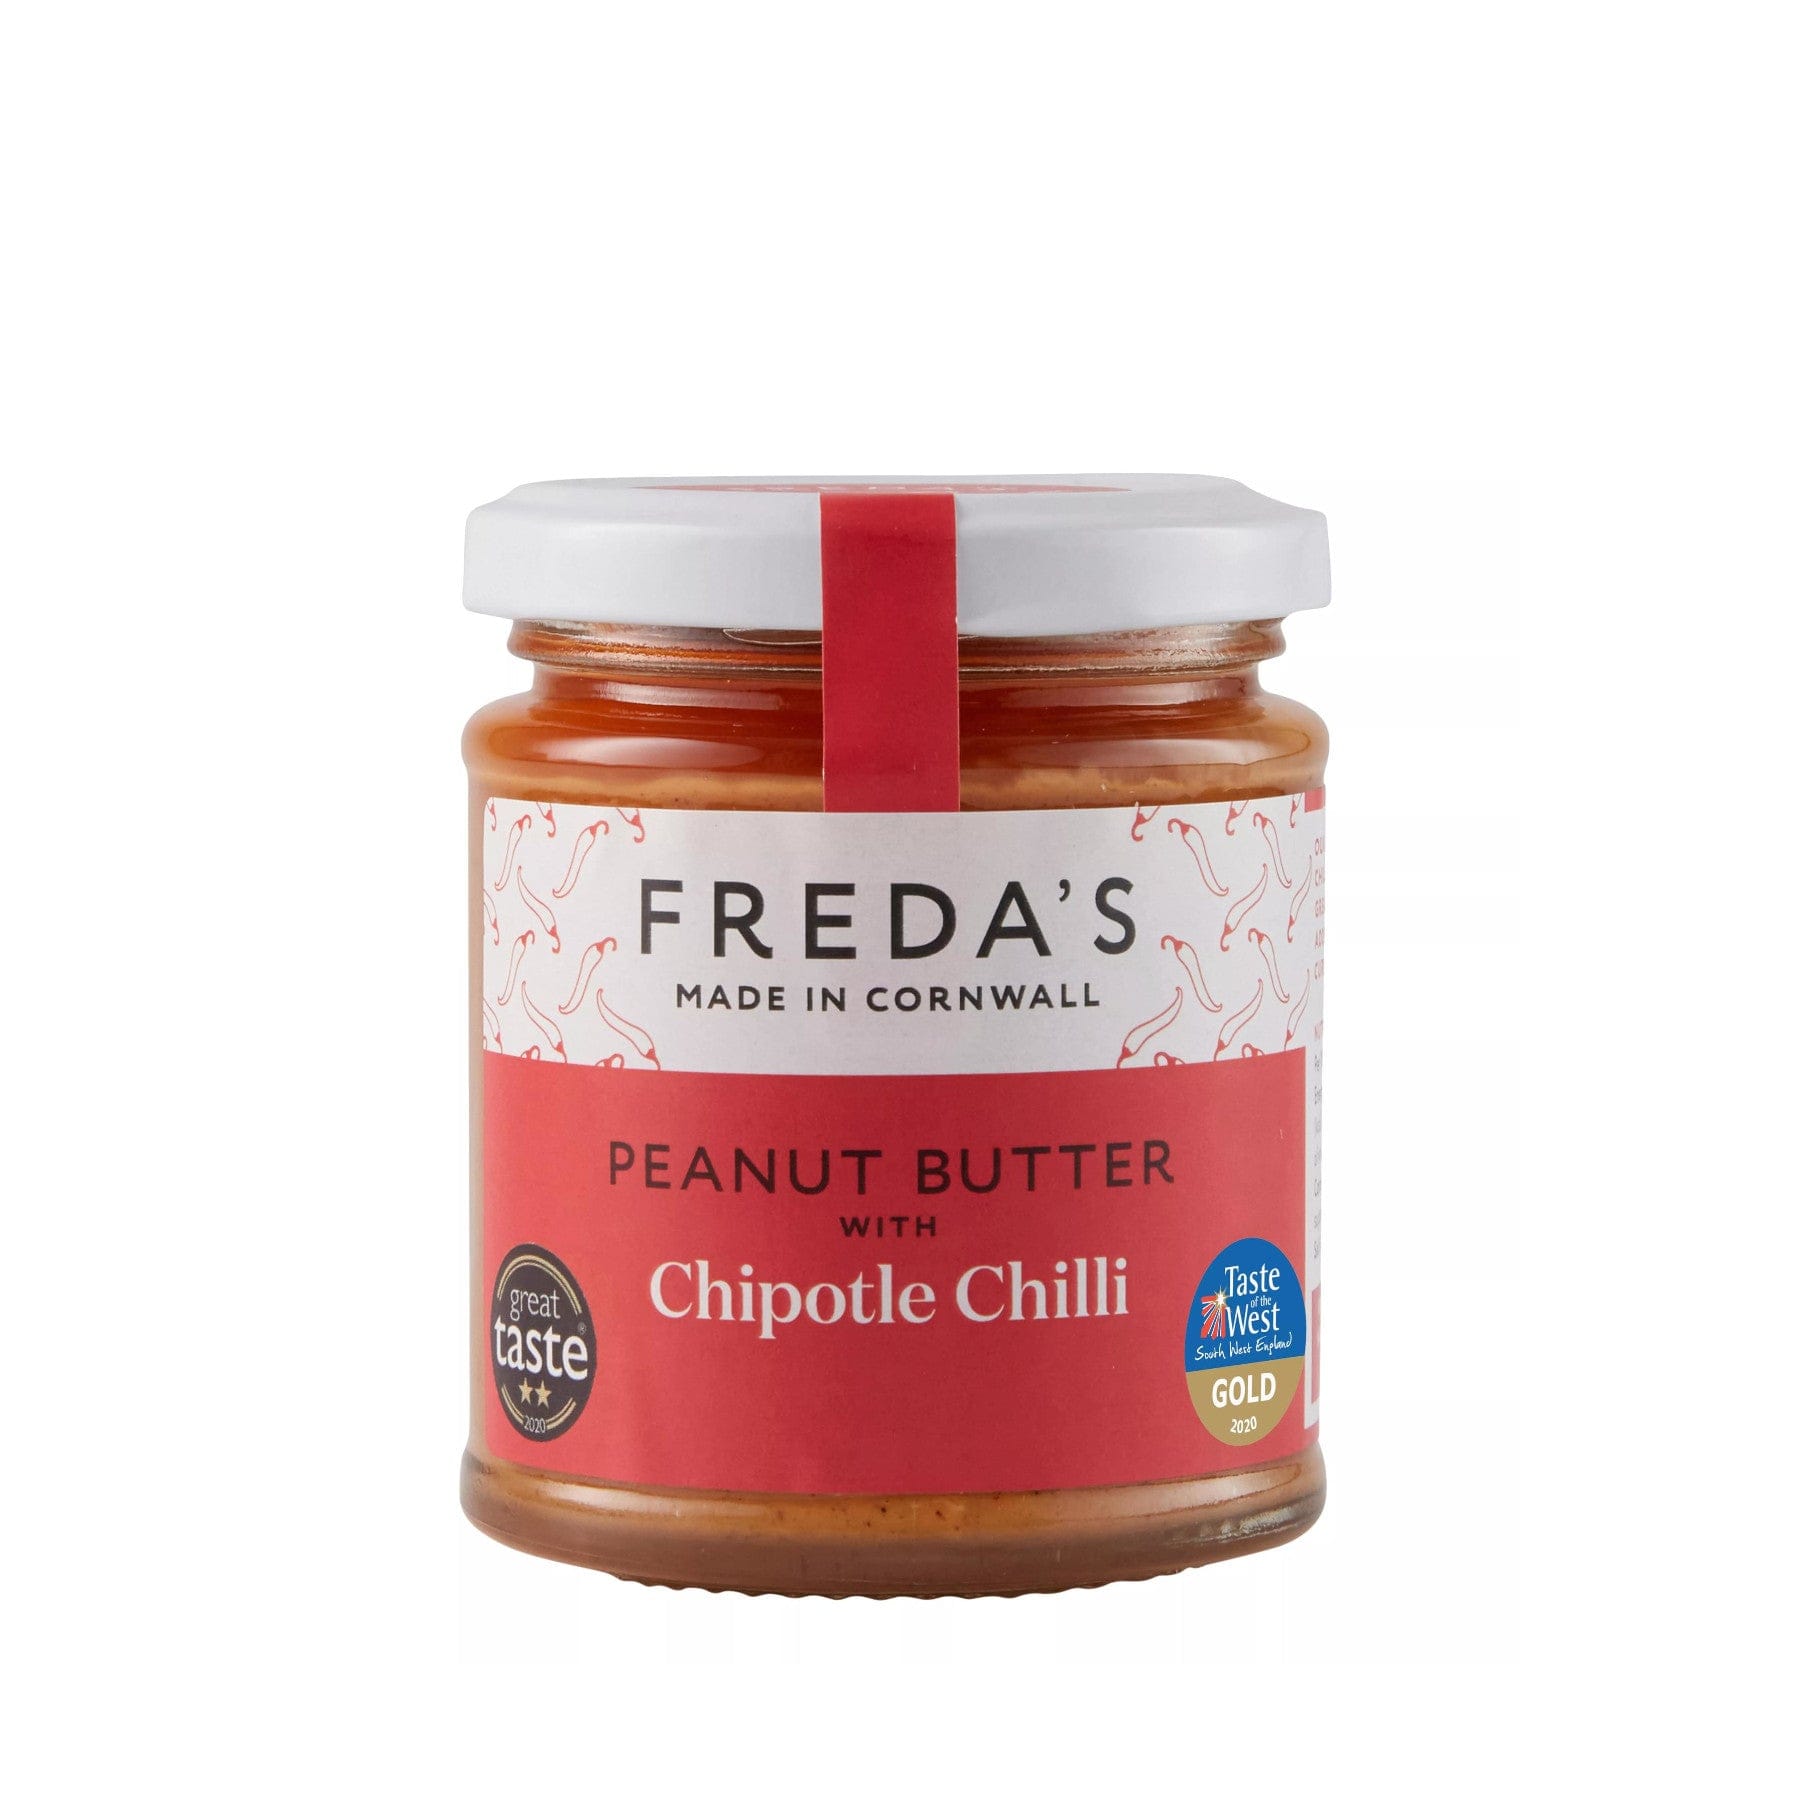 Chipotle chilli peanut butter 180g